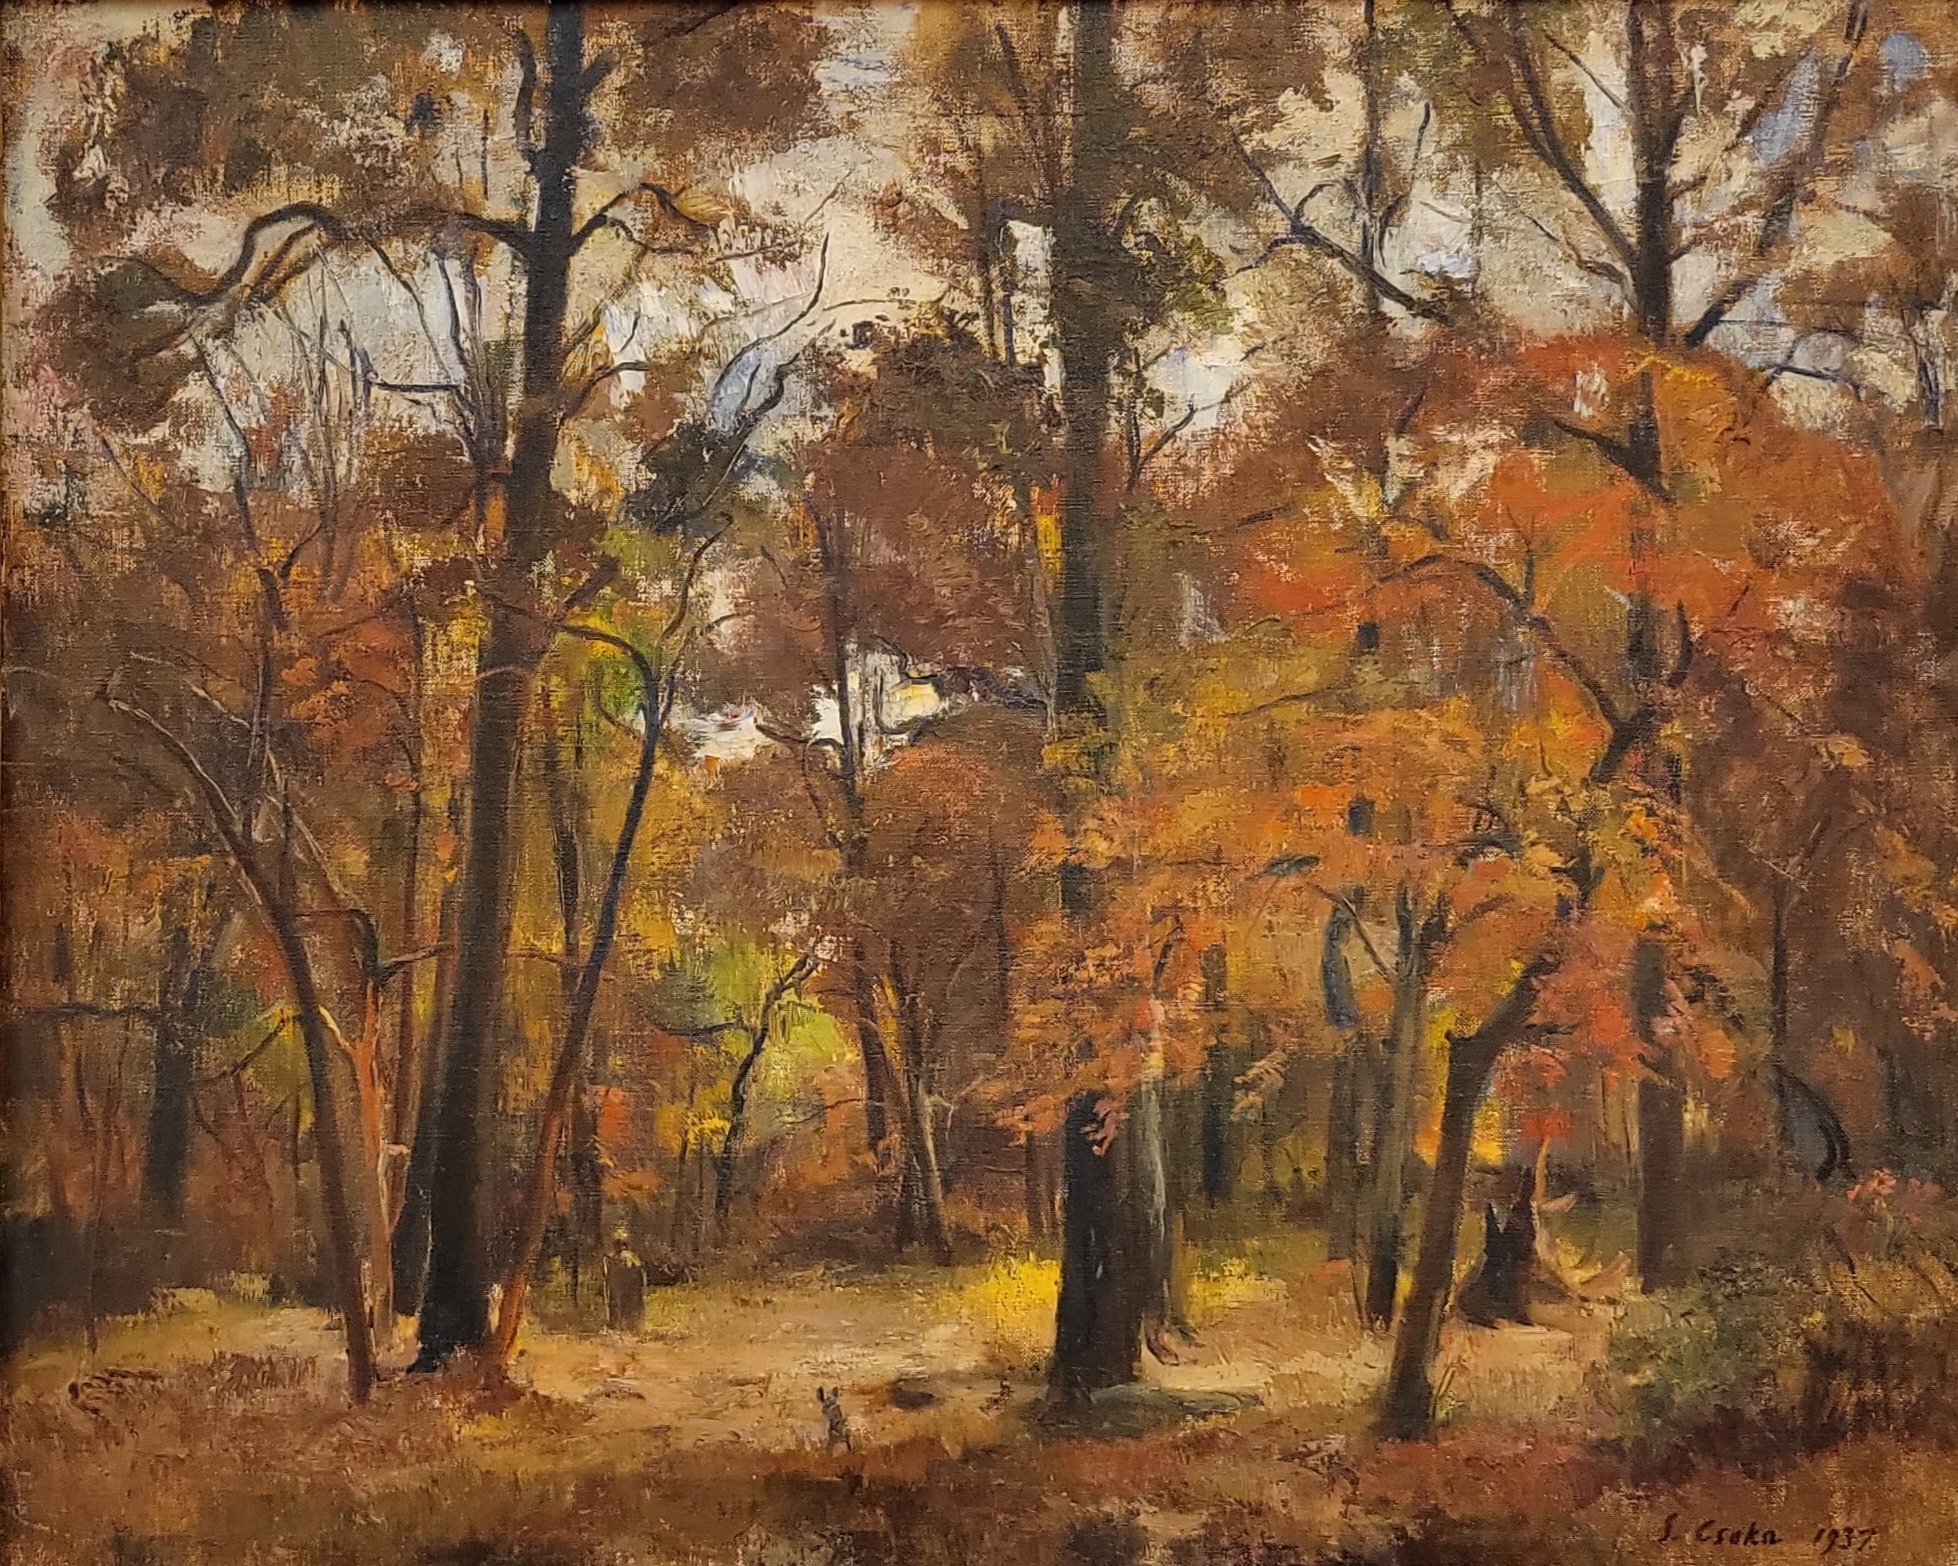 Csoka, Stephen. Autumn Woods